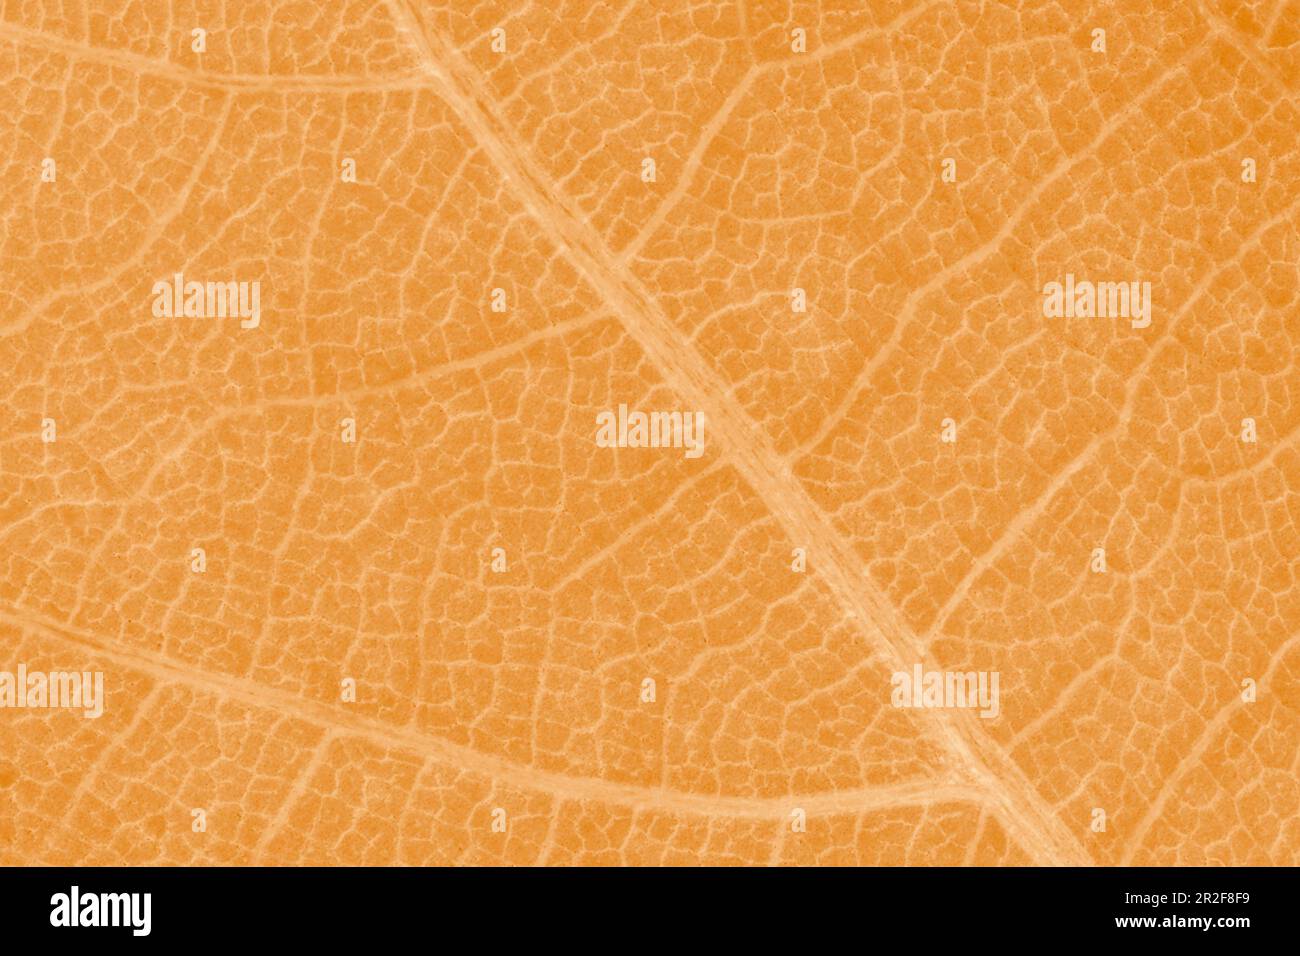 Abstrakter natürlicher Hintergrund: Nahaufnahme der Blattstruktur des Orangenaphorns Stockfoto